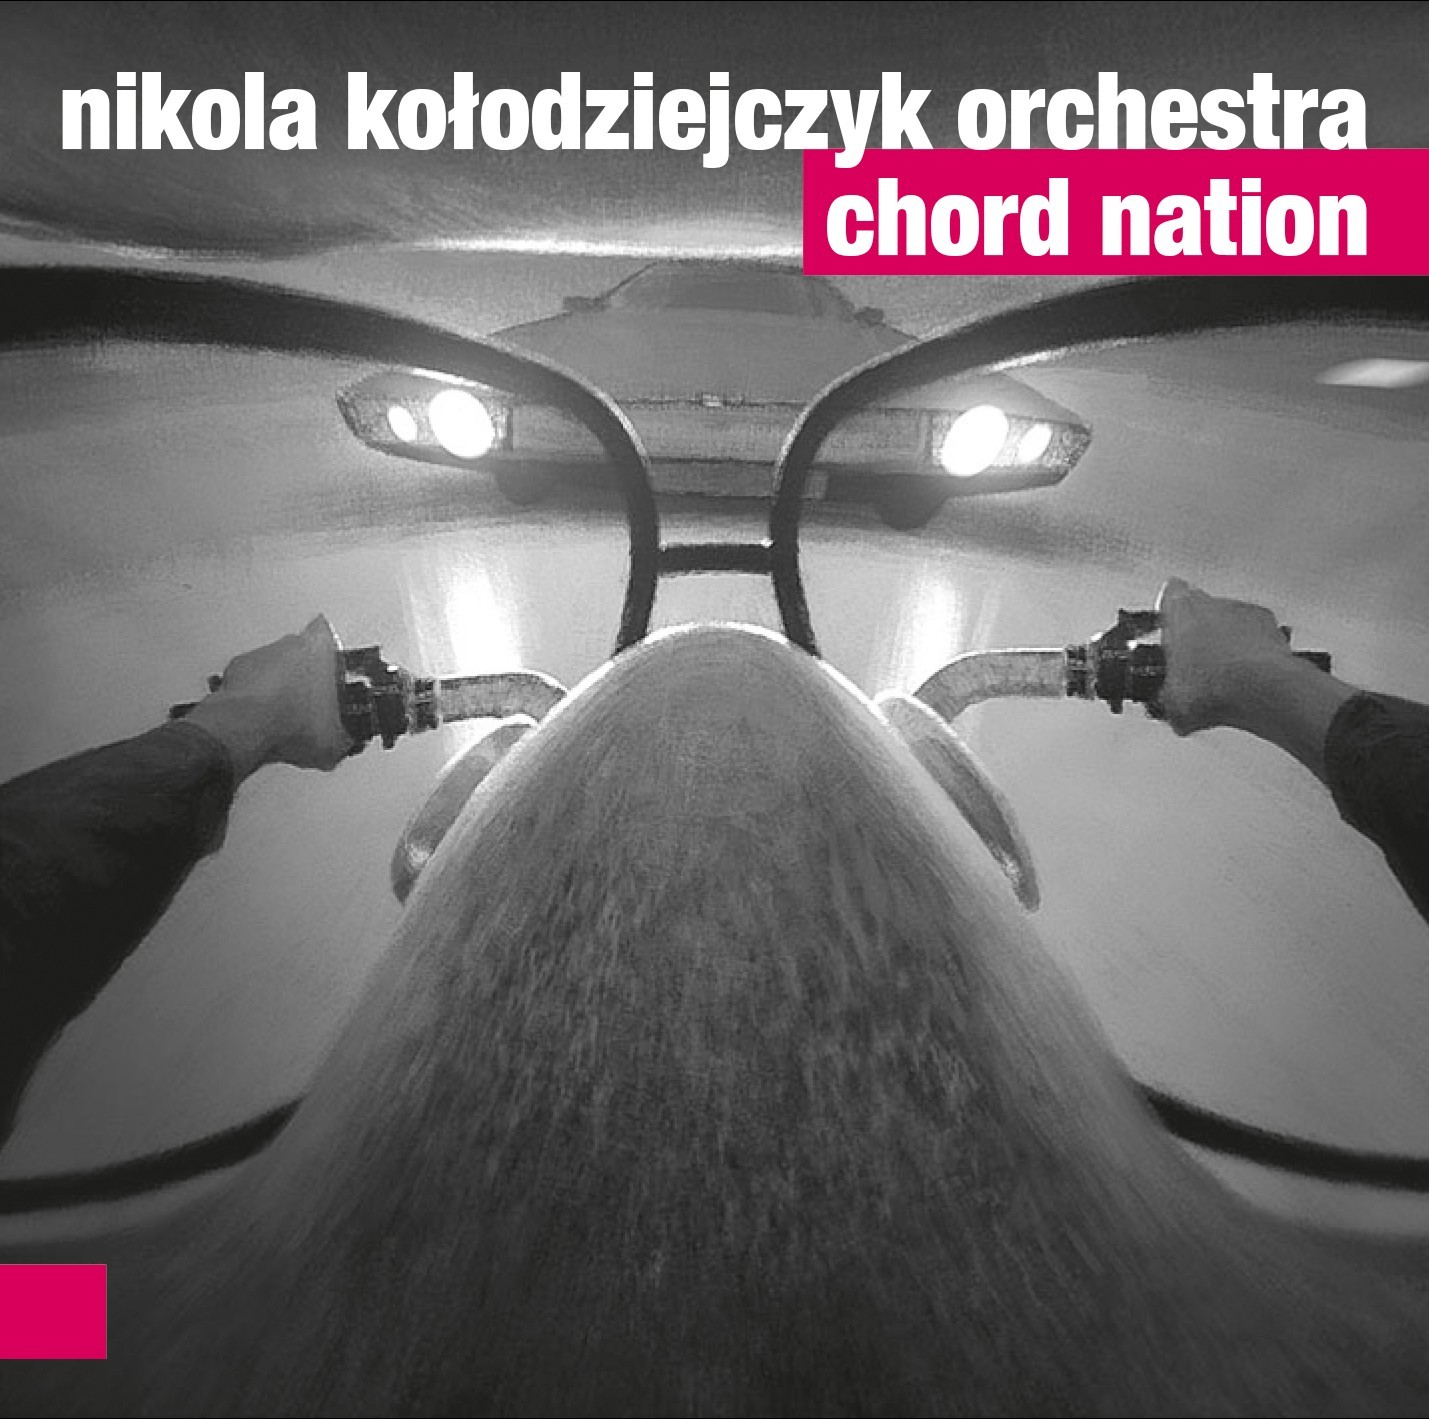 Nikola Kołodziejczyk Orchestra Chord Nation